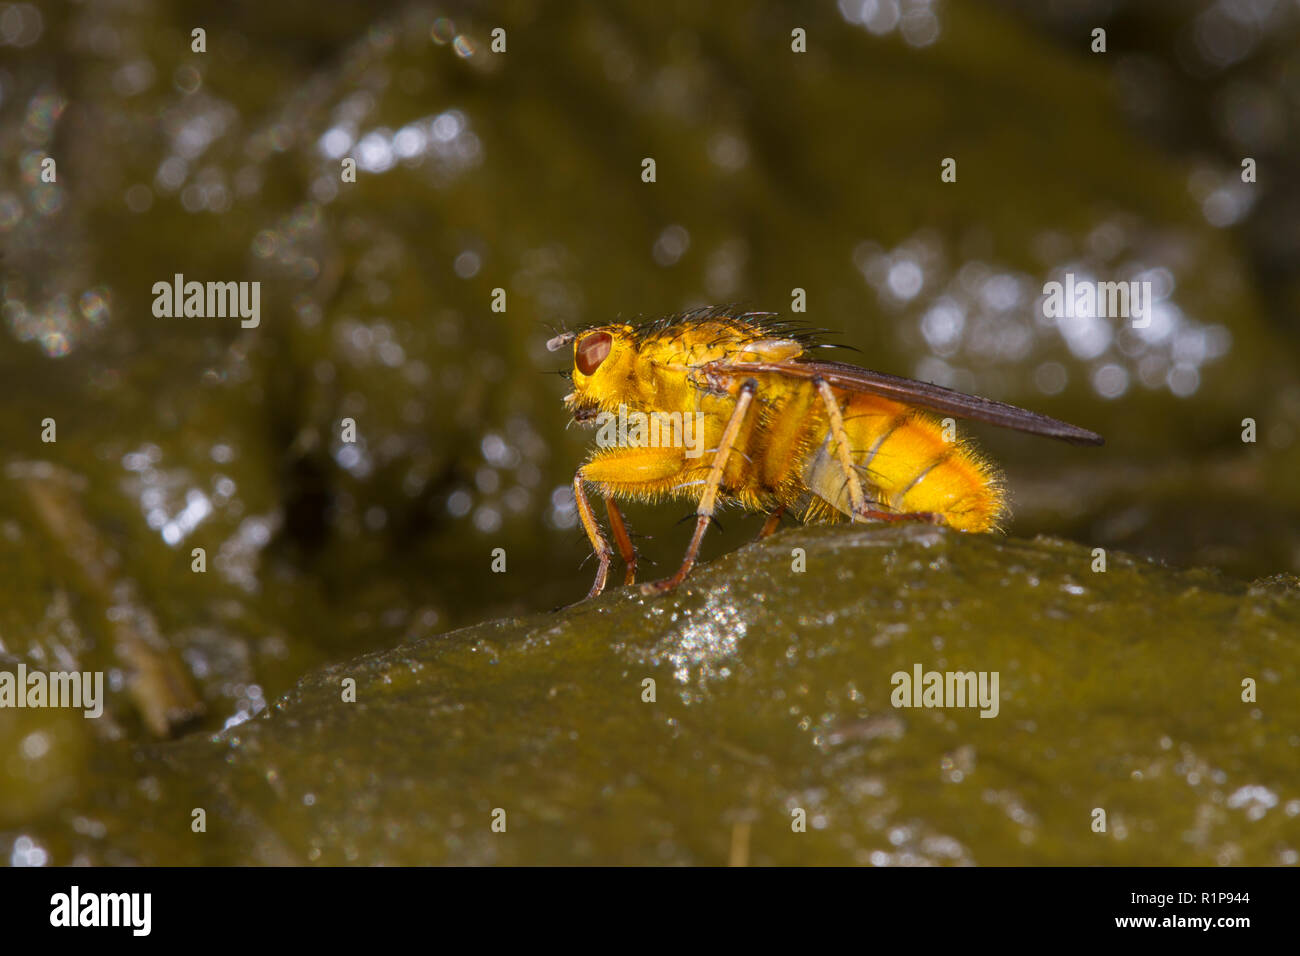 Dungfly jaune (Scathophaga stercoraria) adulte sur cowdung. Powys, Pays de Galles. Octobre. Banque D'Images